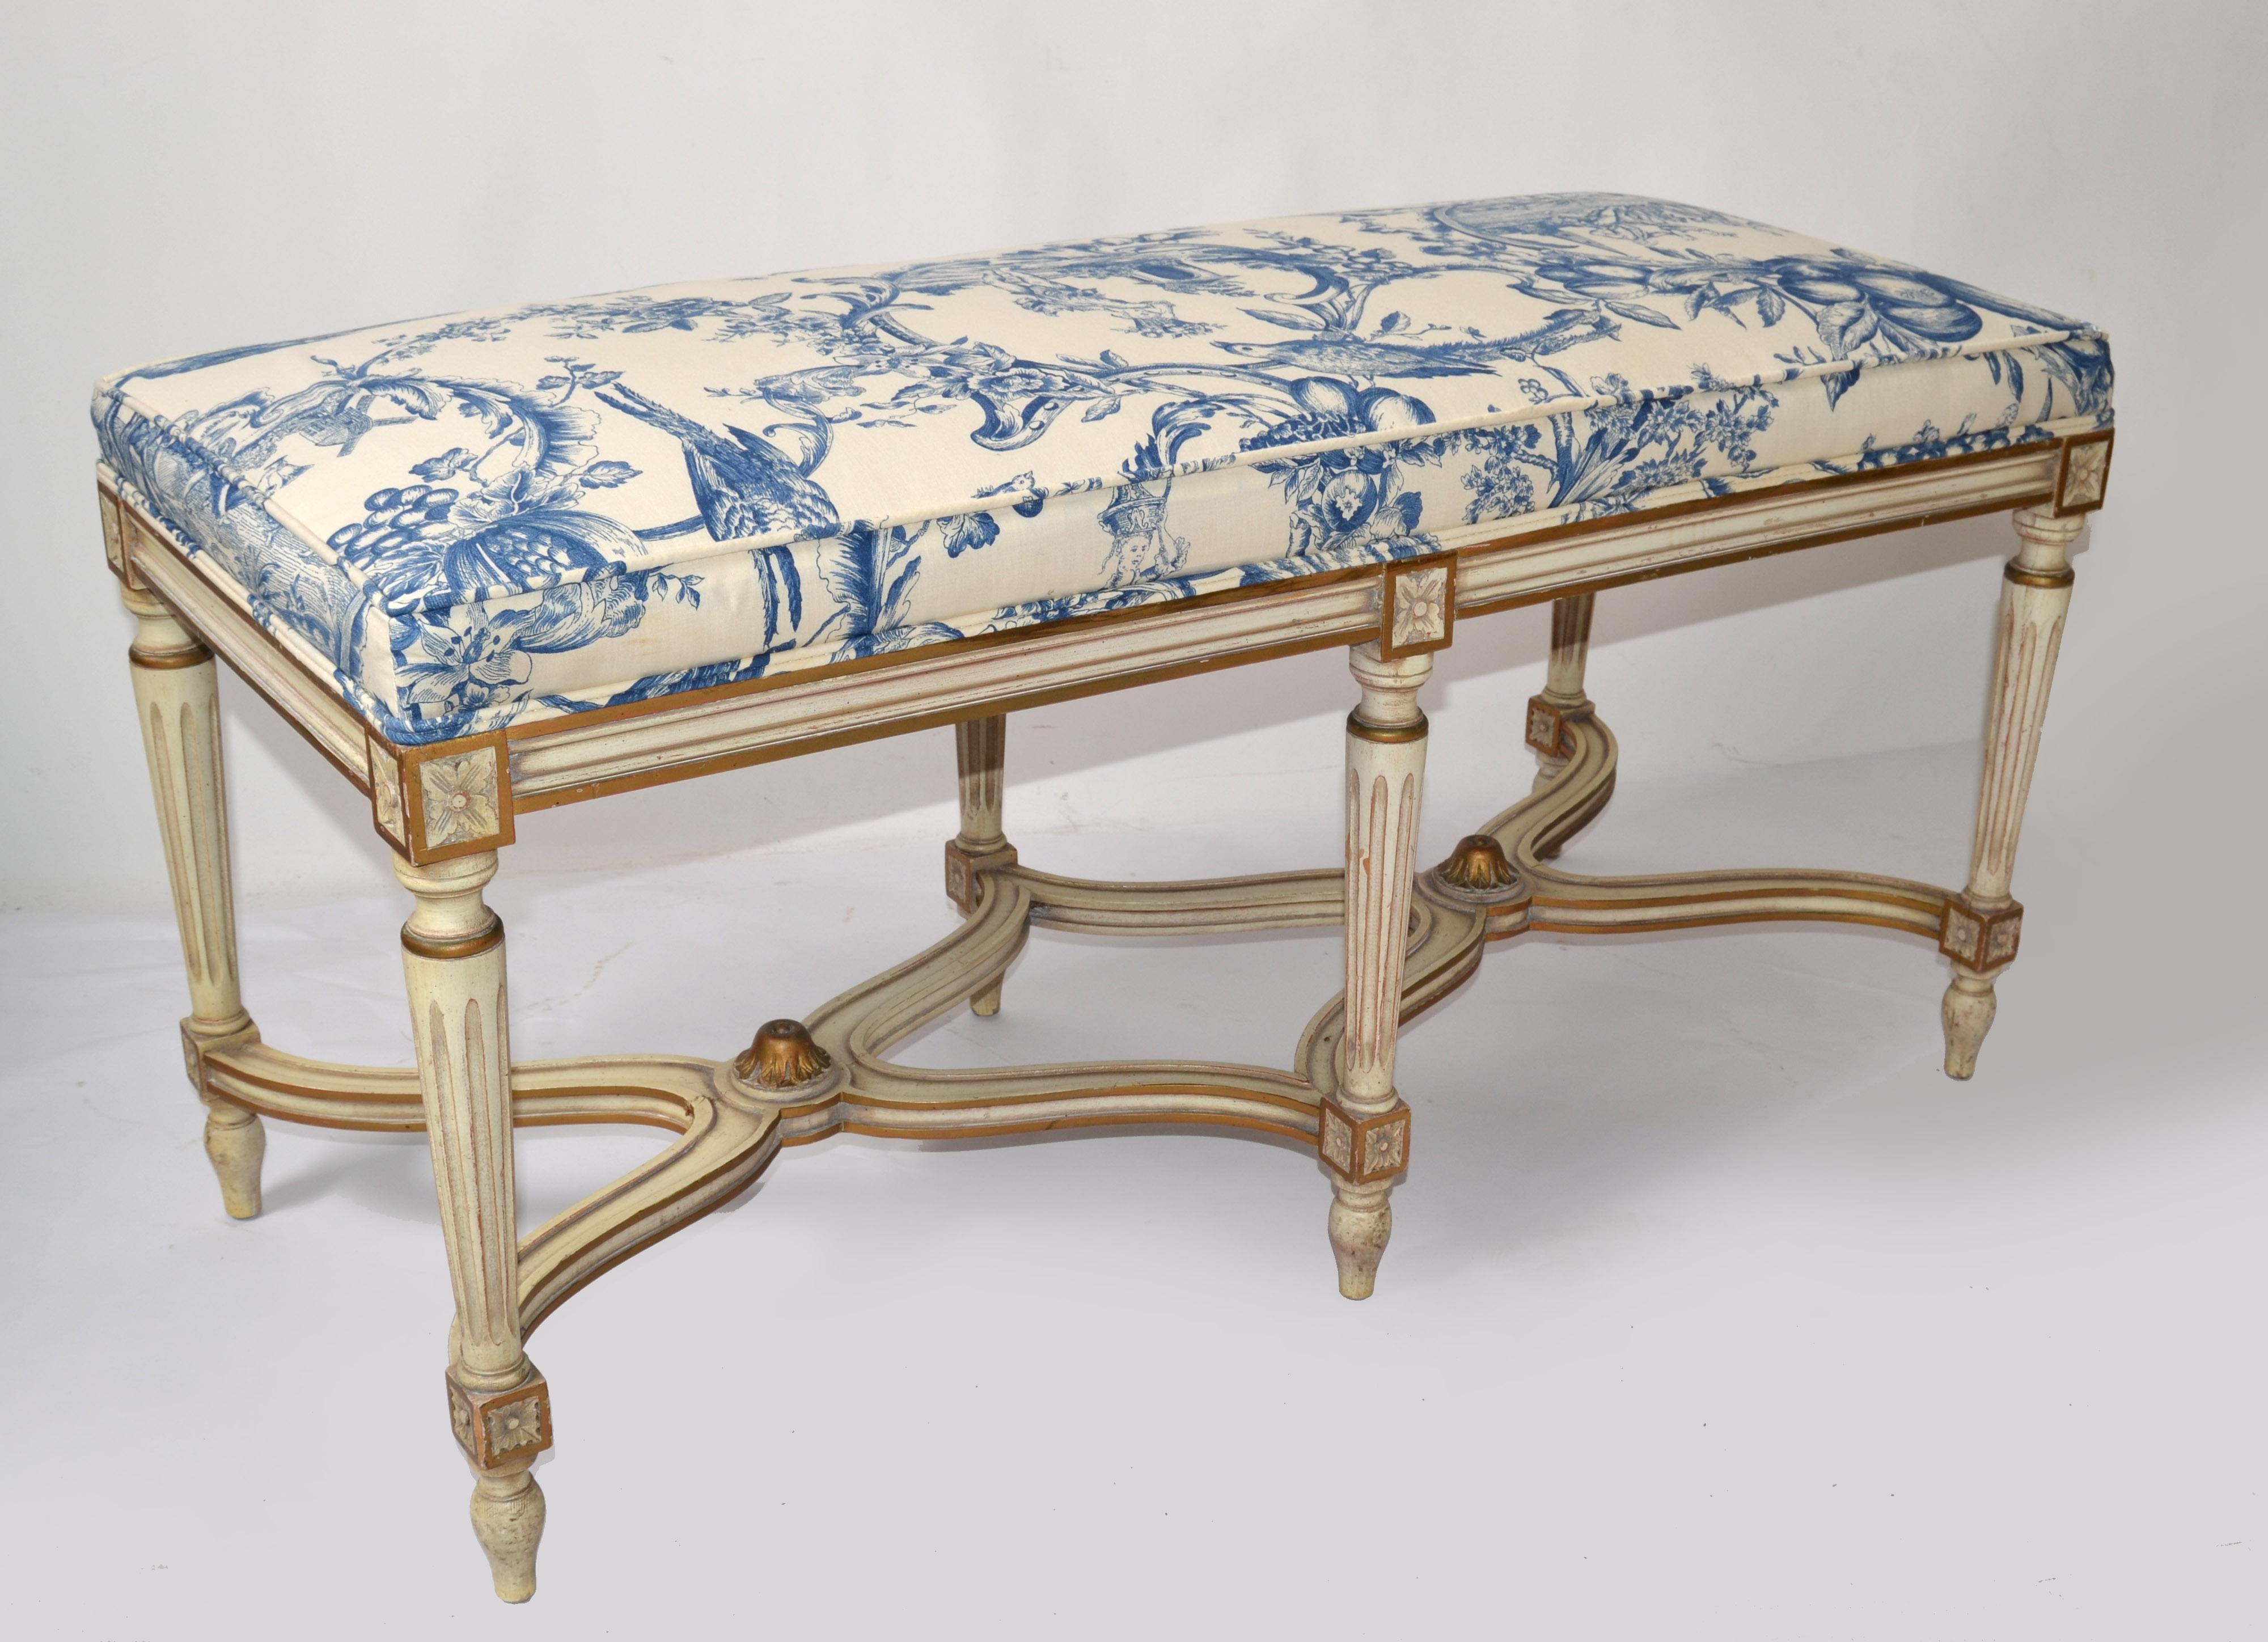 Exquisite Louis XVI-Bank Karges Furniture Co. Handgeschnitzter Hartholz-Stoff mit blauem Motiv, hergestellt in Indiana, USA. 
Die Schürze, die Bänder und die Beine dieser anmutigen Bank im französischen Stil sind alle handgeschnitzt. Er ist